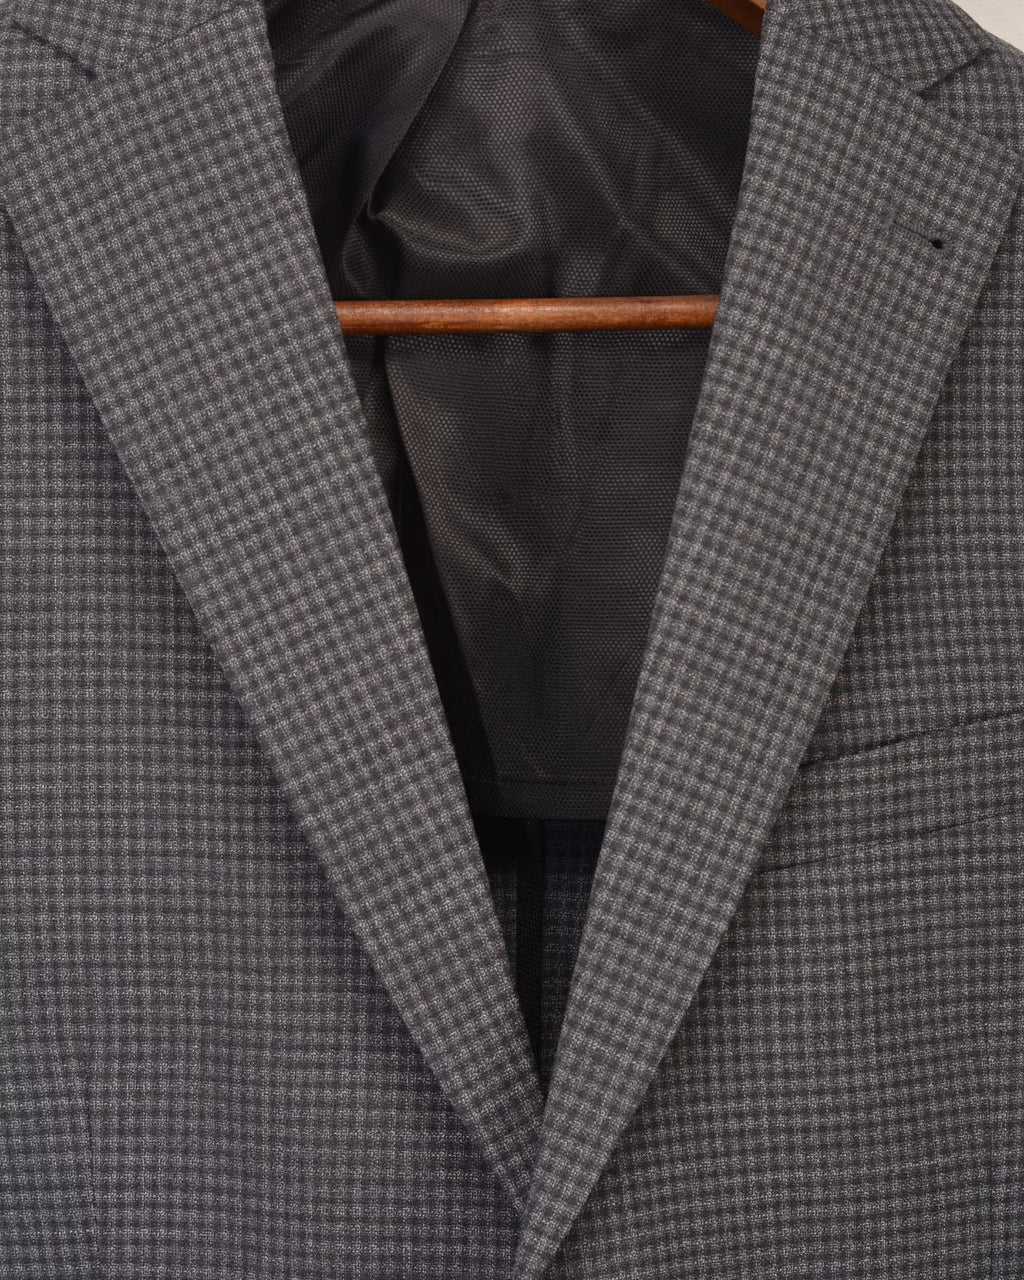 Awearness Kenneth Cole Modern Fit Sport Coat, Gray & Blue Windowpane